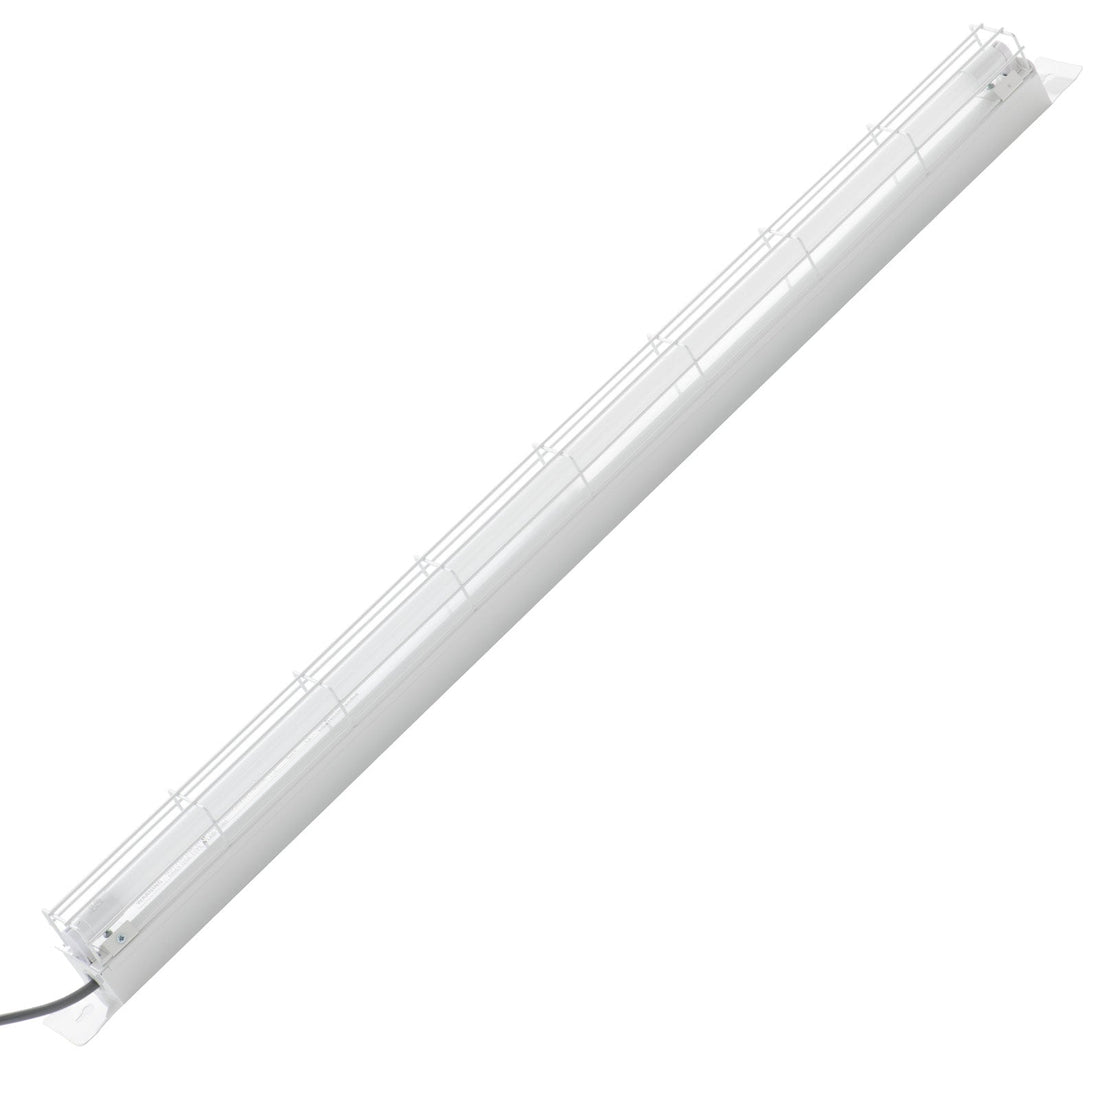 Lift Shaft Single T8 LED Tube Batten Light Mercator